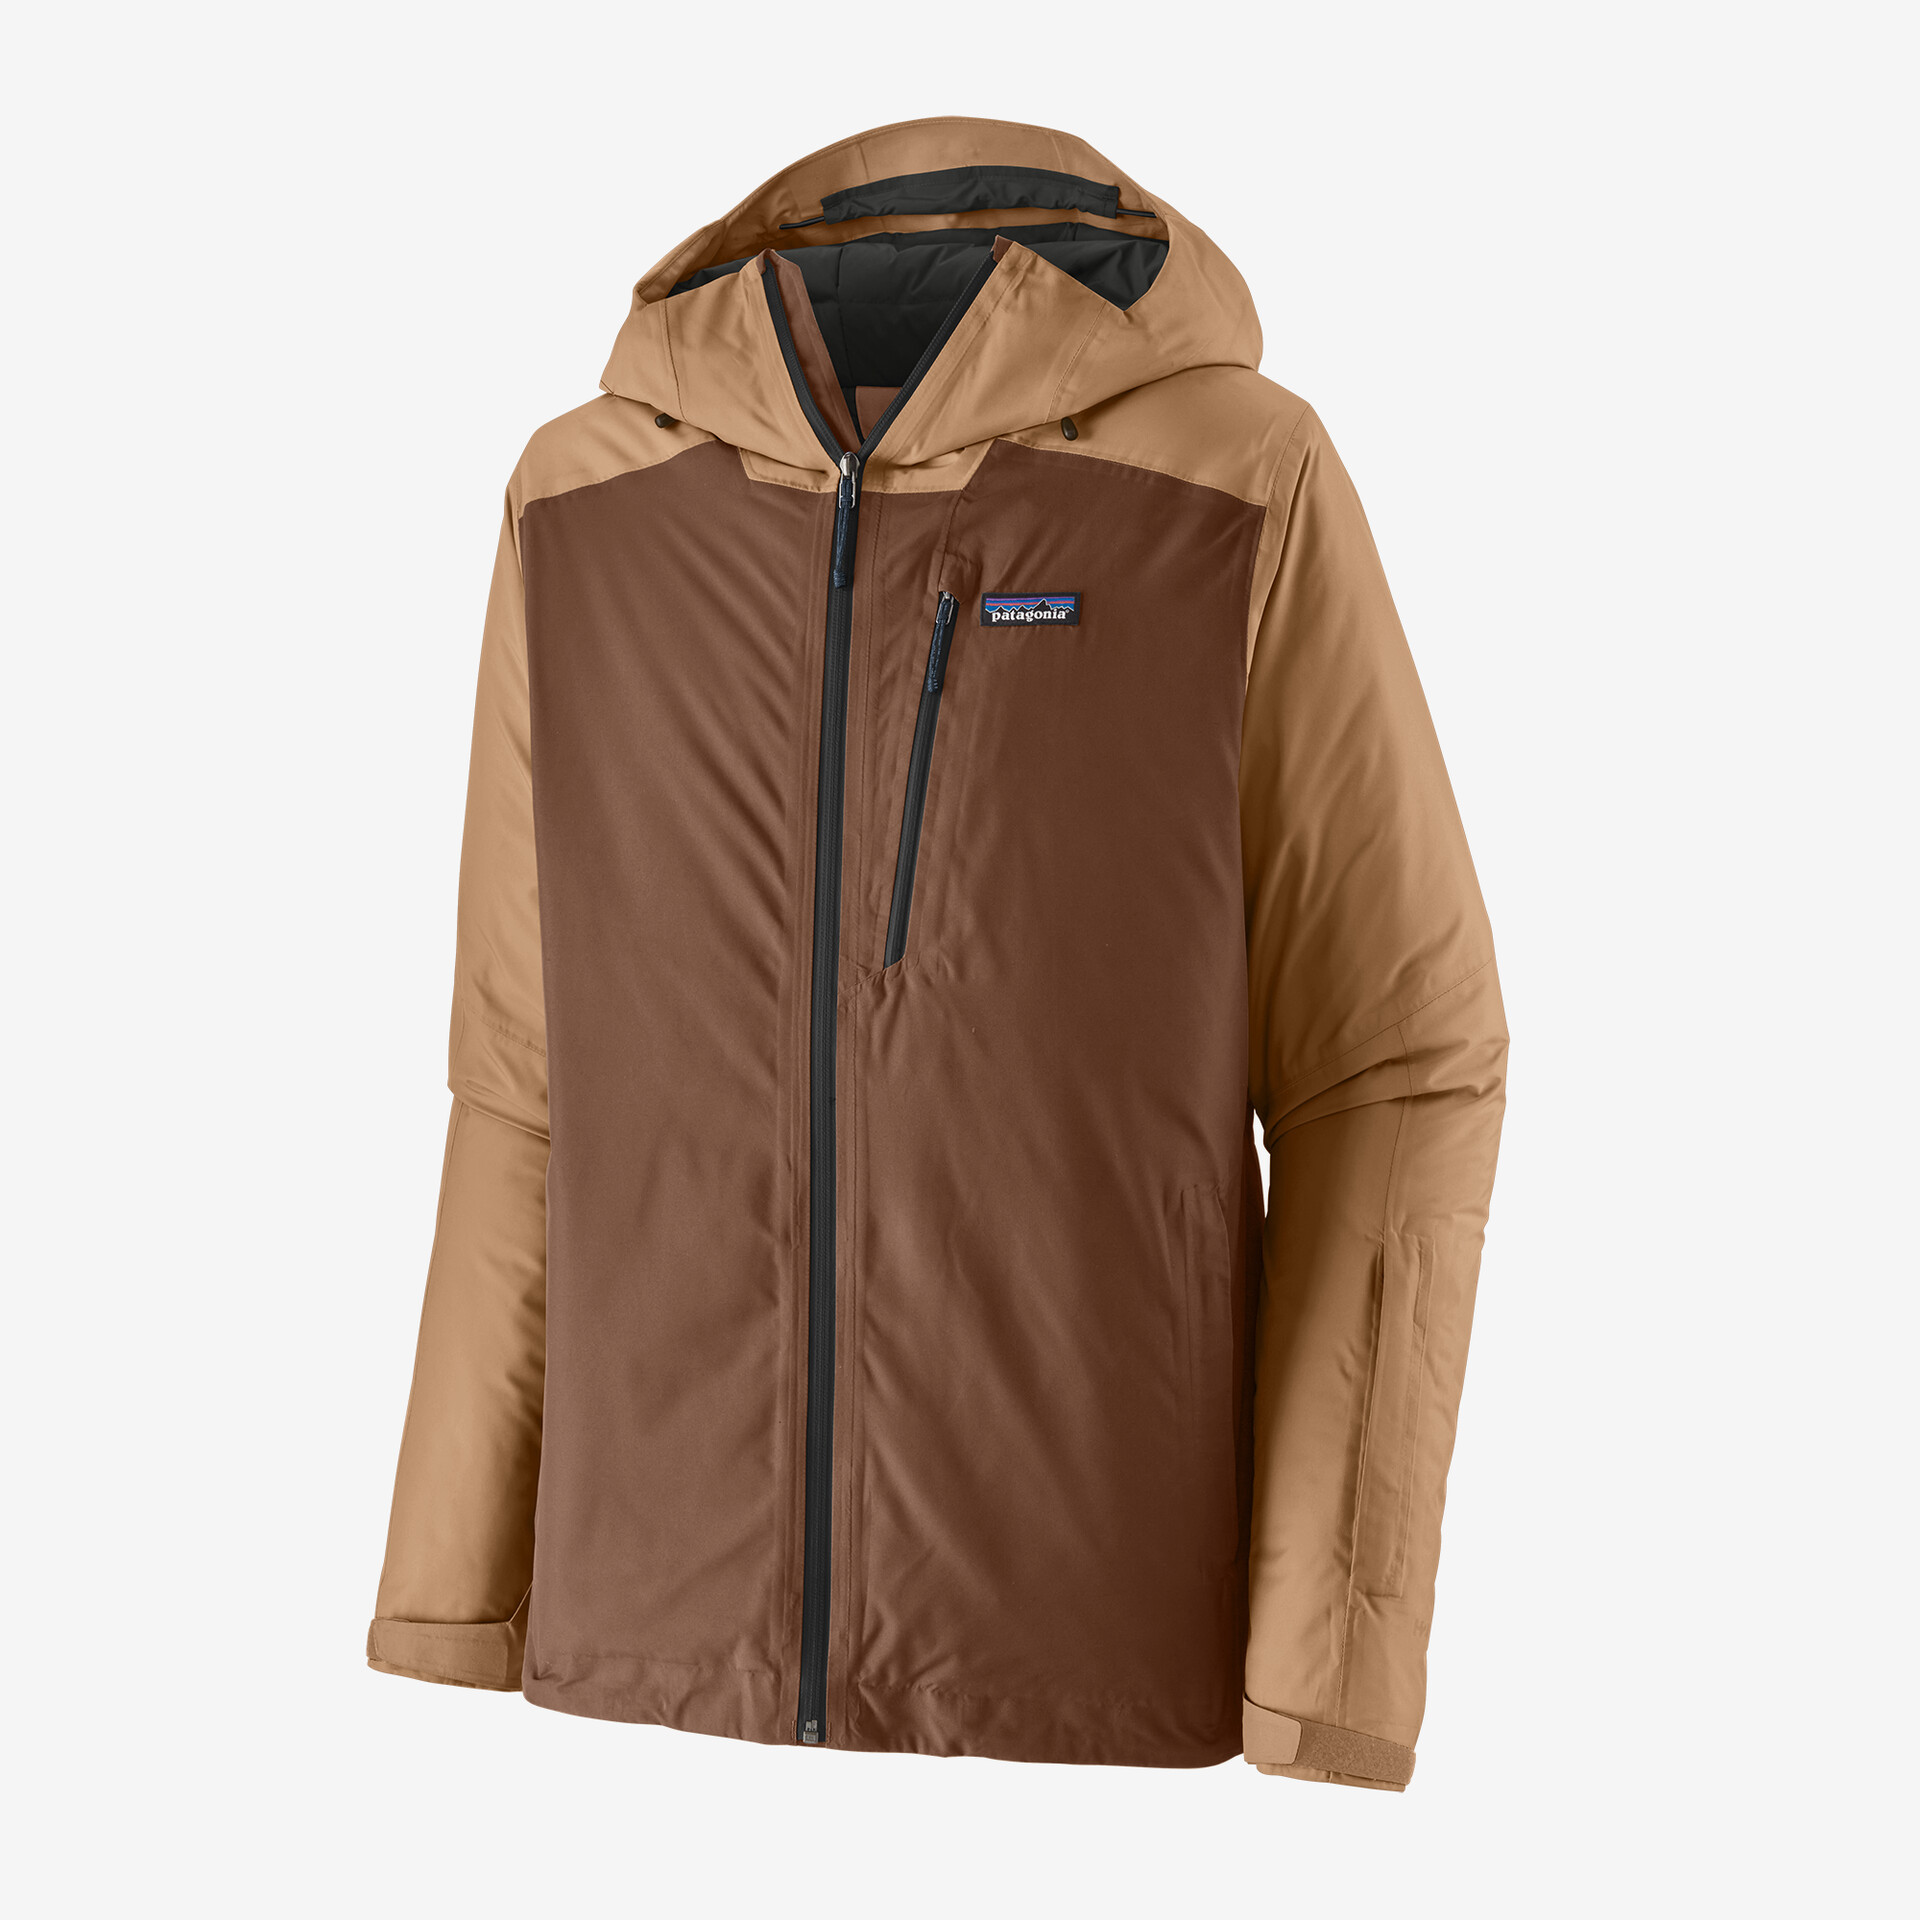 Мужская утепленная куртка Powder Town Patagonia, мус коричневый куртка утепленная мужская icepeak parkdale коричневый